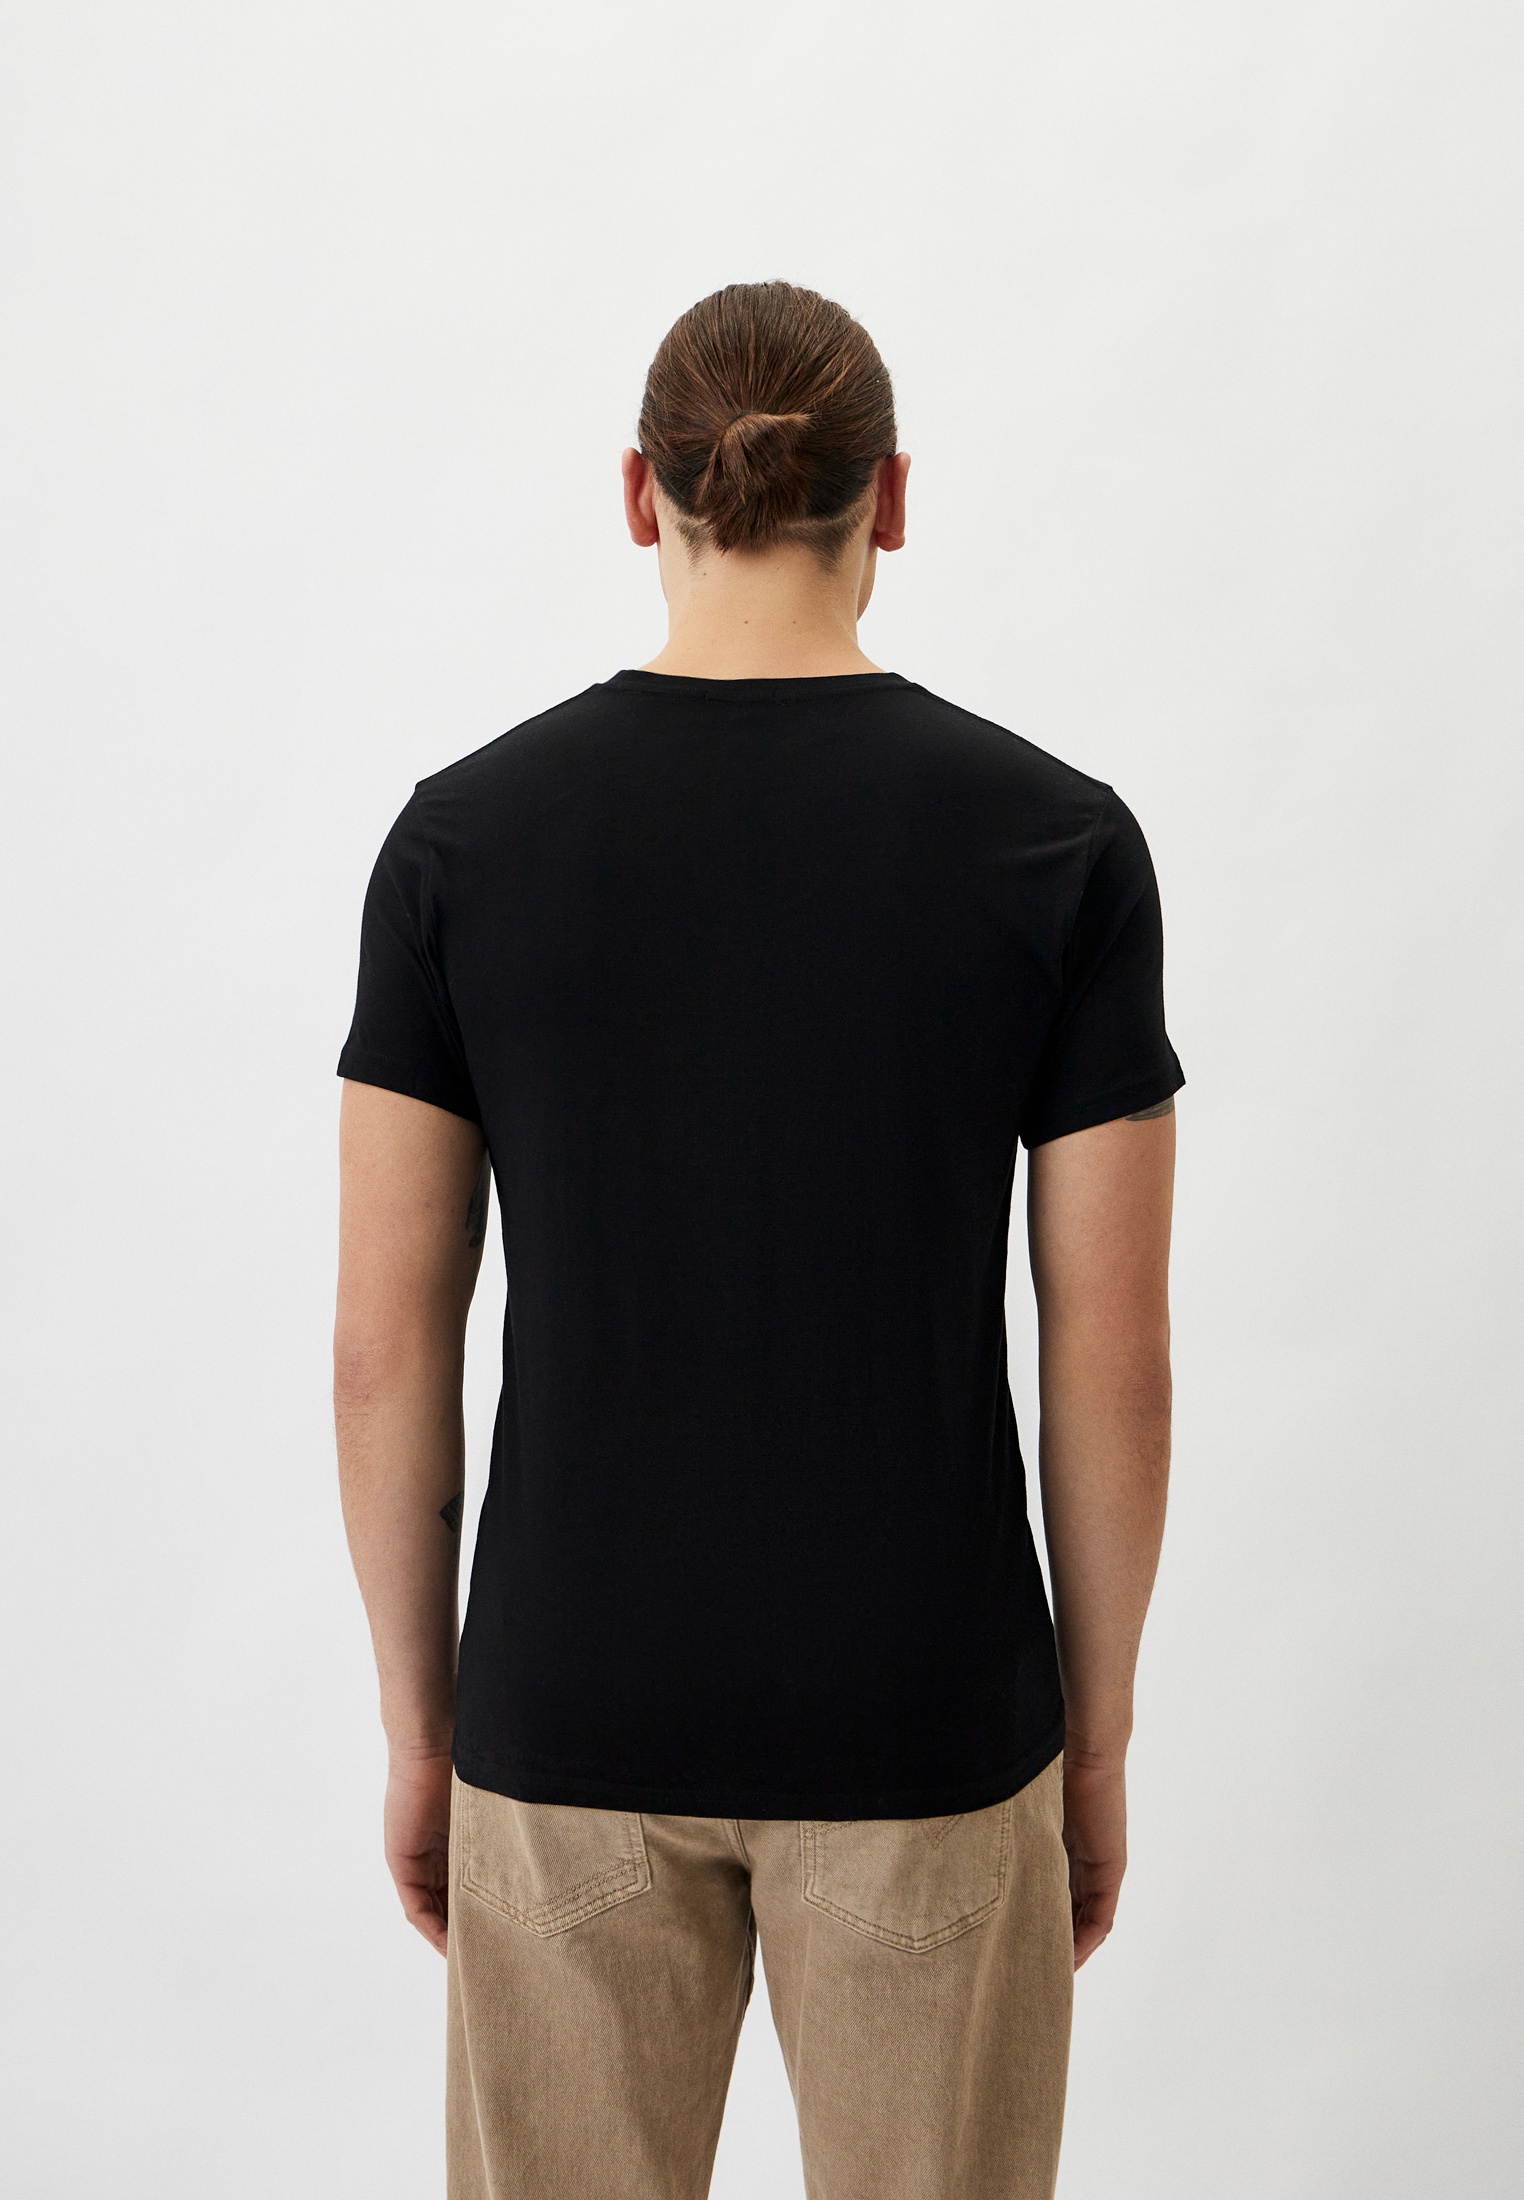 Мужская футболка Baldinini (Балдинини) B-OLM-M018: изображение 3